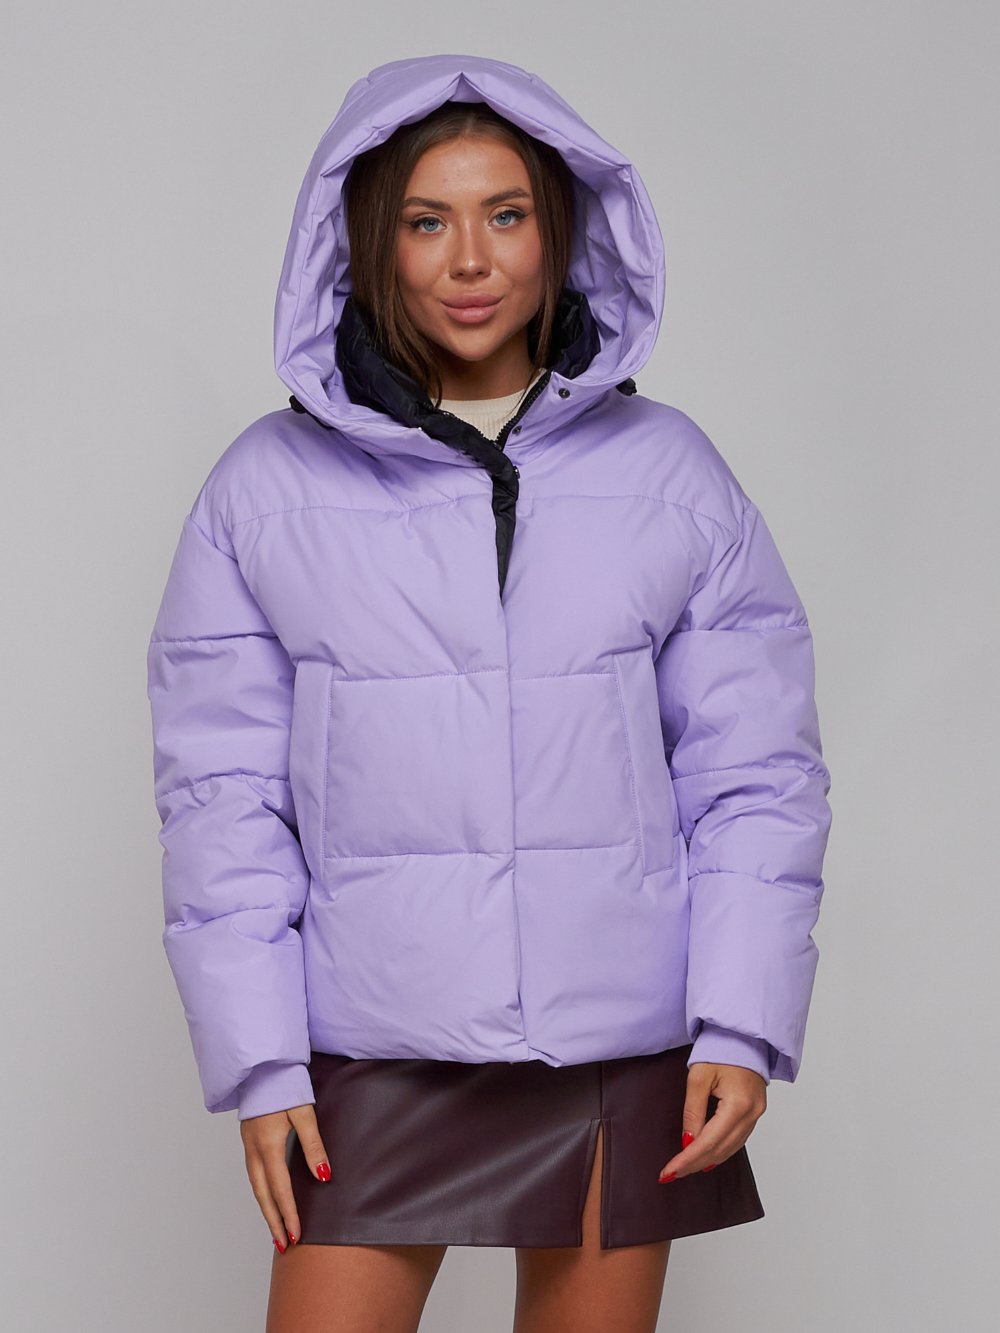 Купить куртку зимнюю оптом от производителя недорого в Москве 52309F 1